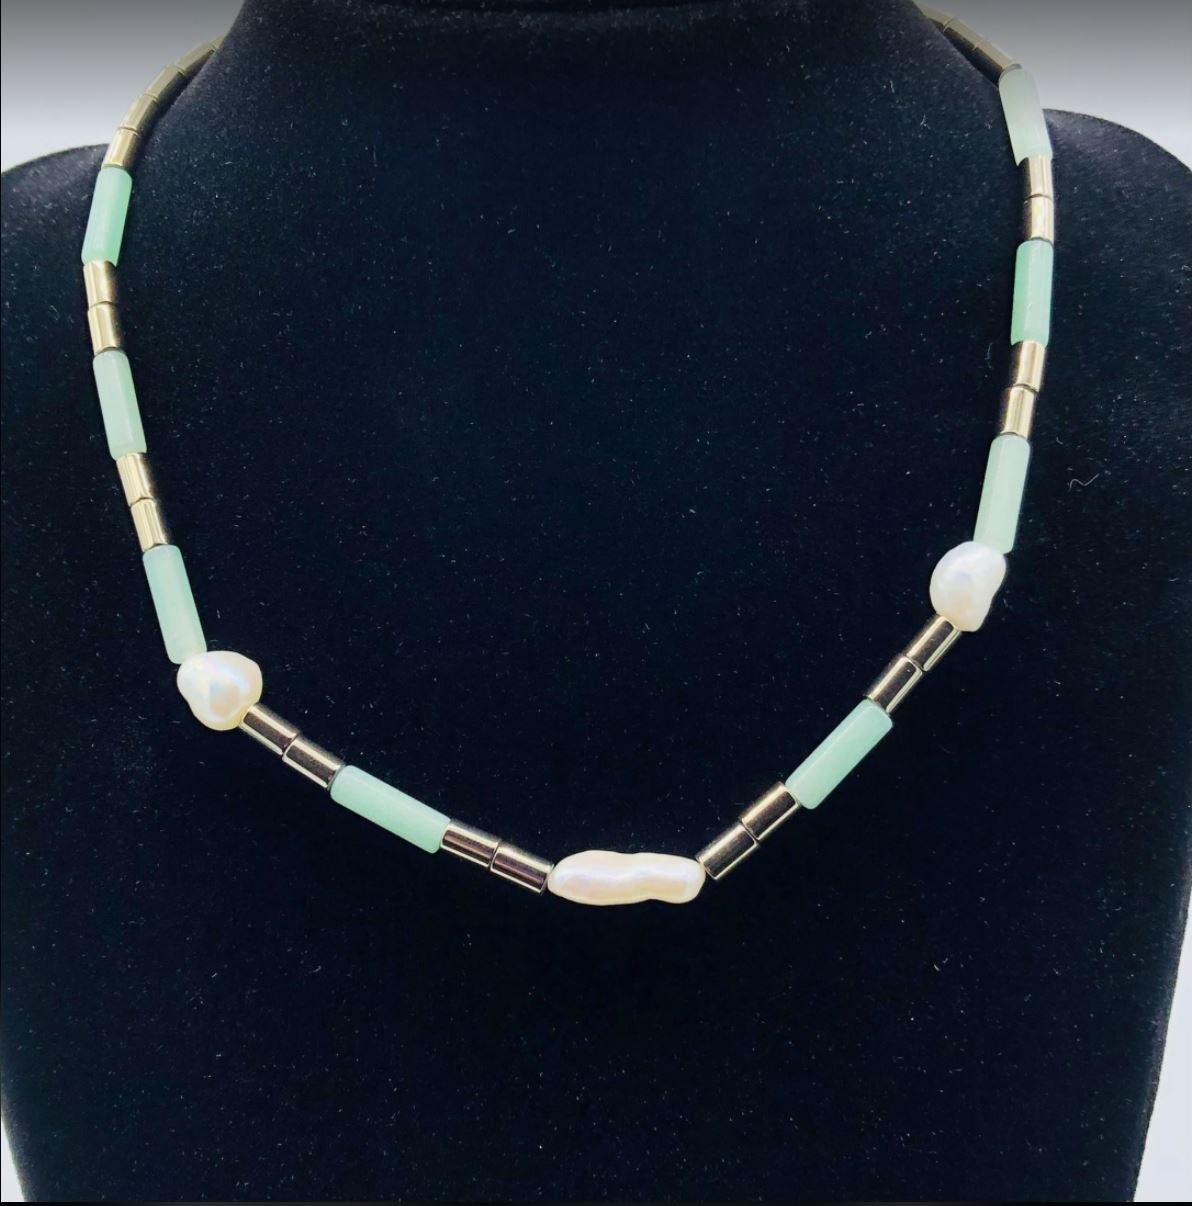 Habana Paris Short Amazonite Necklace / Amazonite, Hematite, Pearls / Green/ Gemstone Jewelry